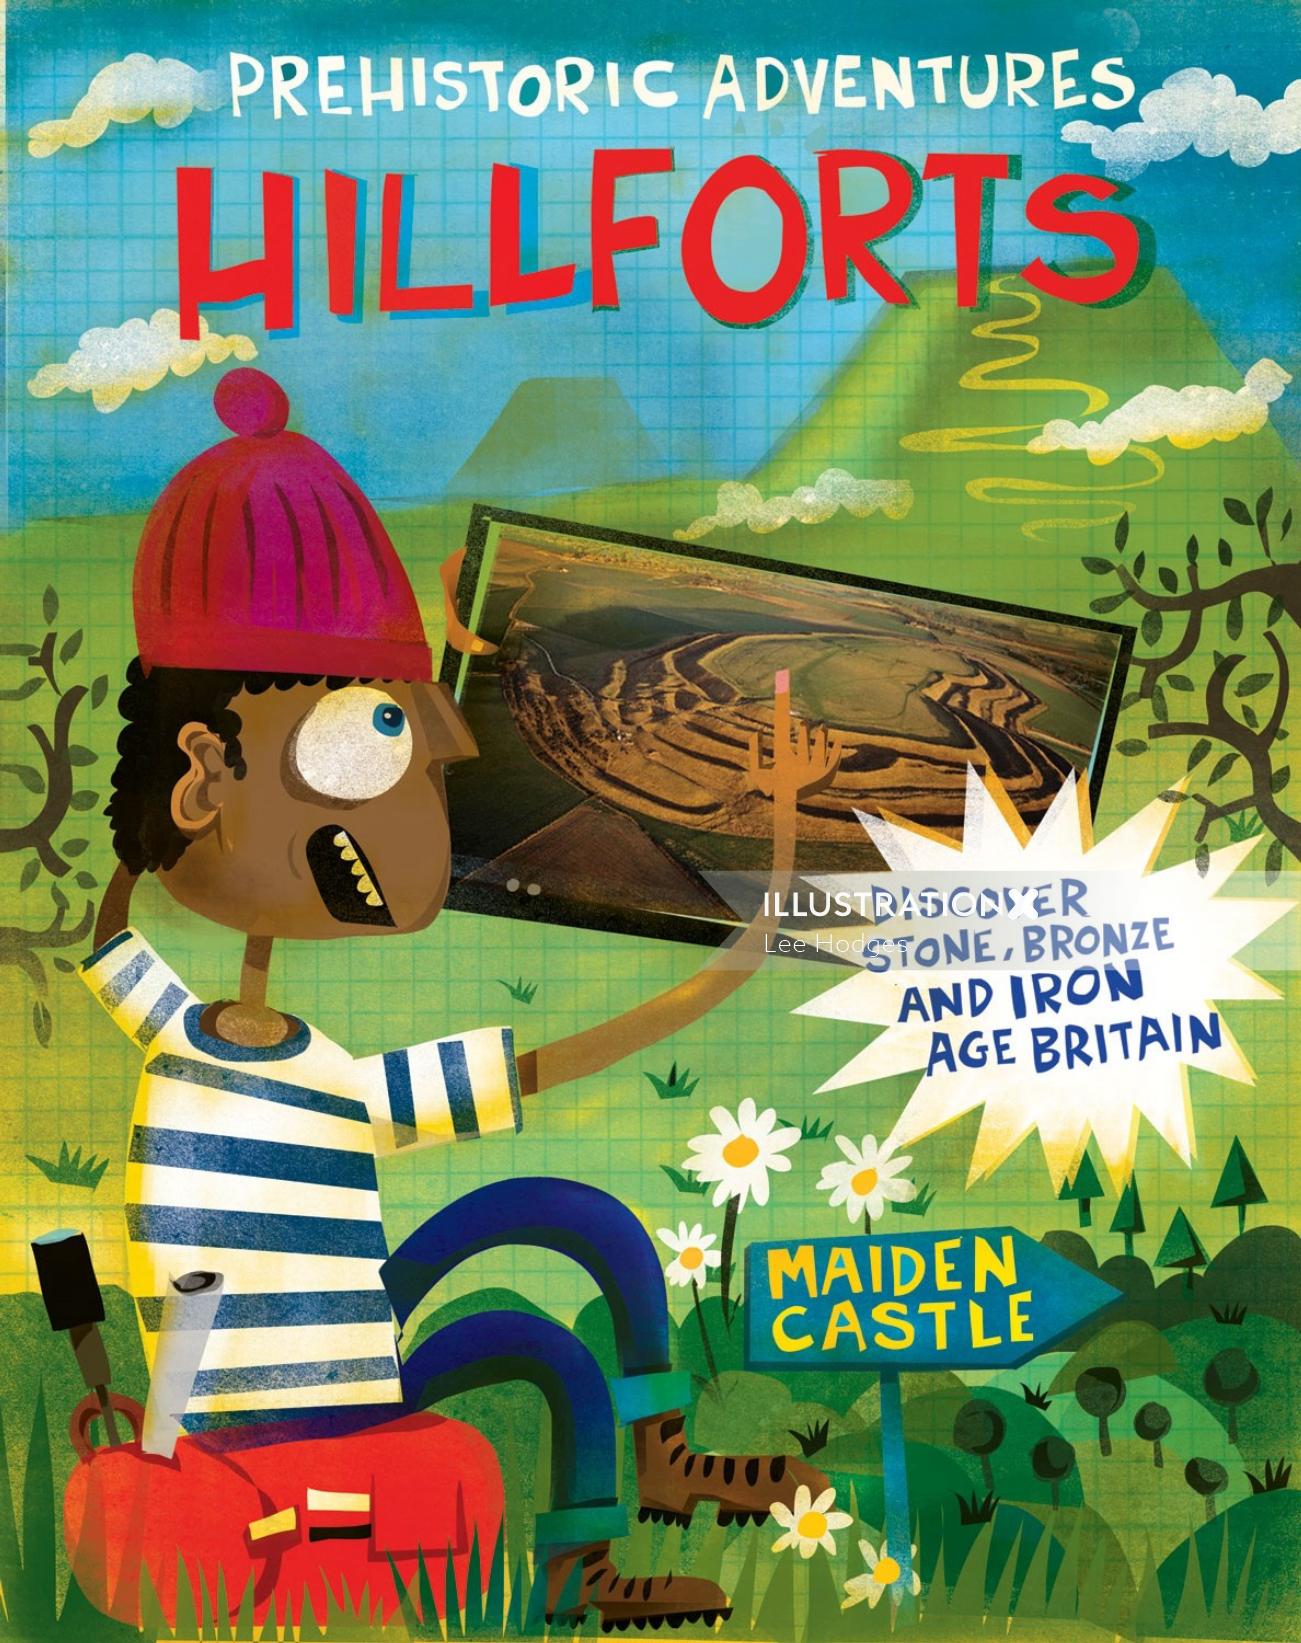 Aventuras prehistóricas: ilustración del libro Hill Forts